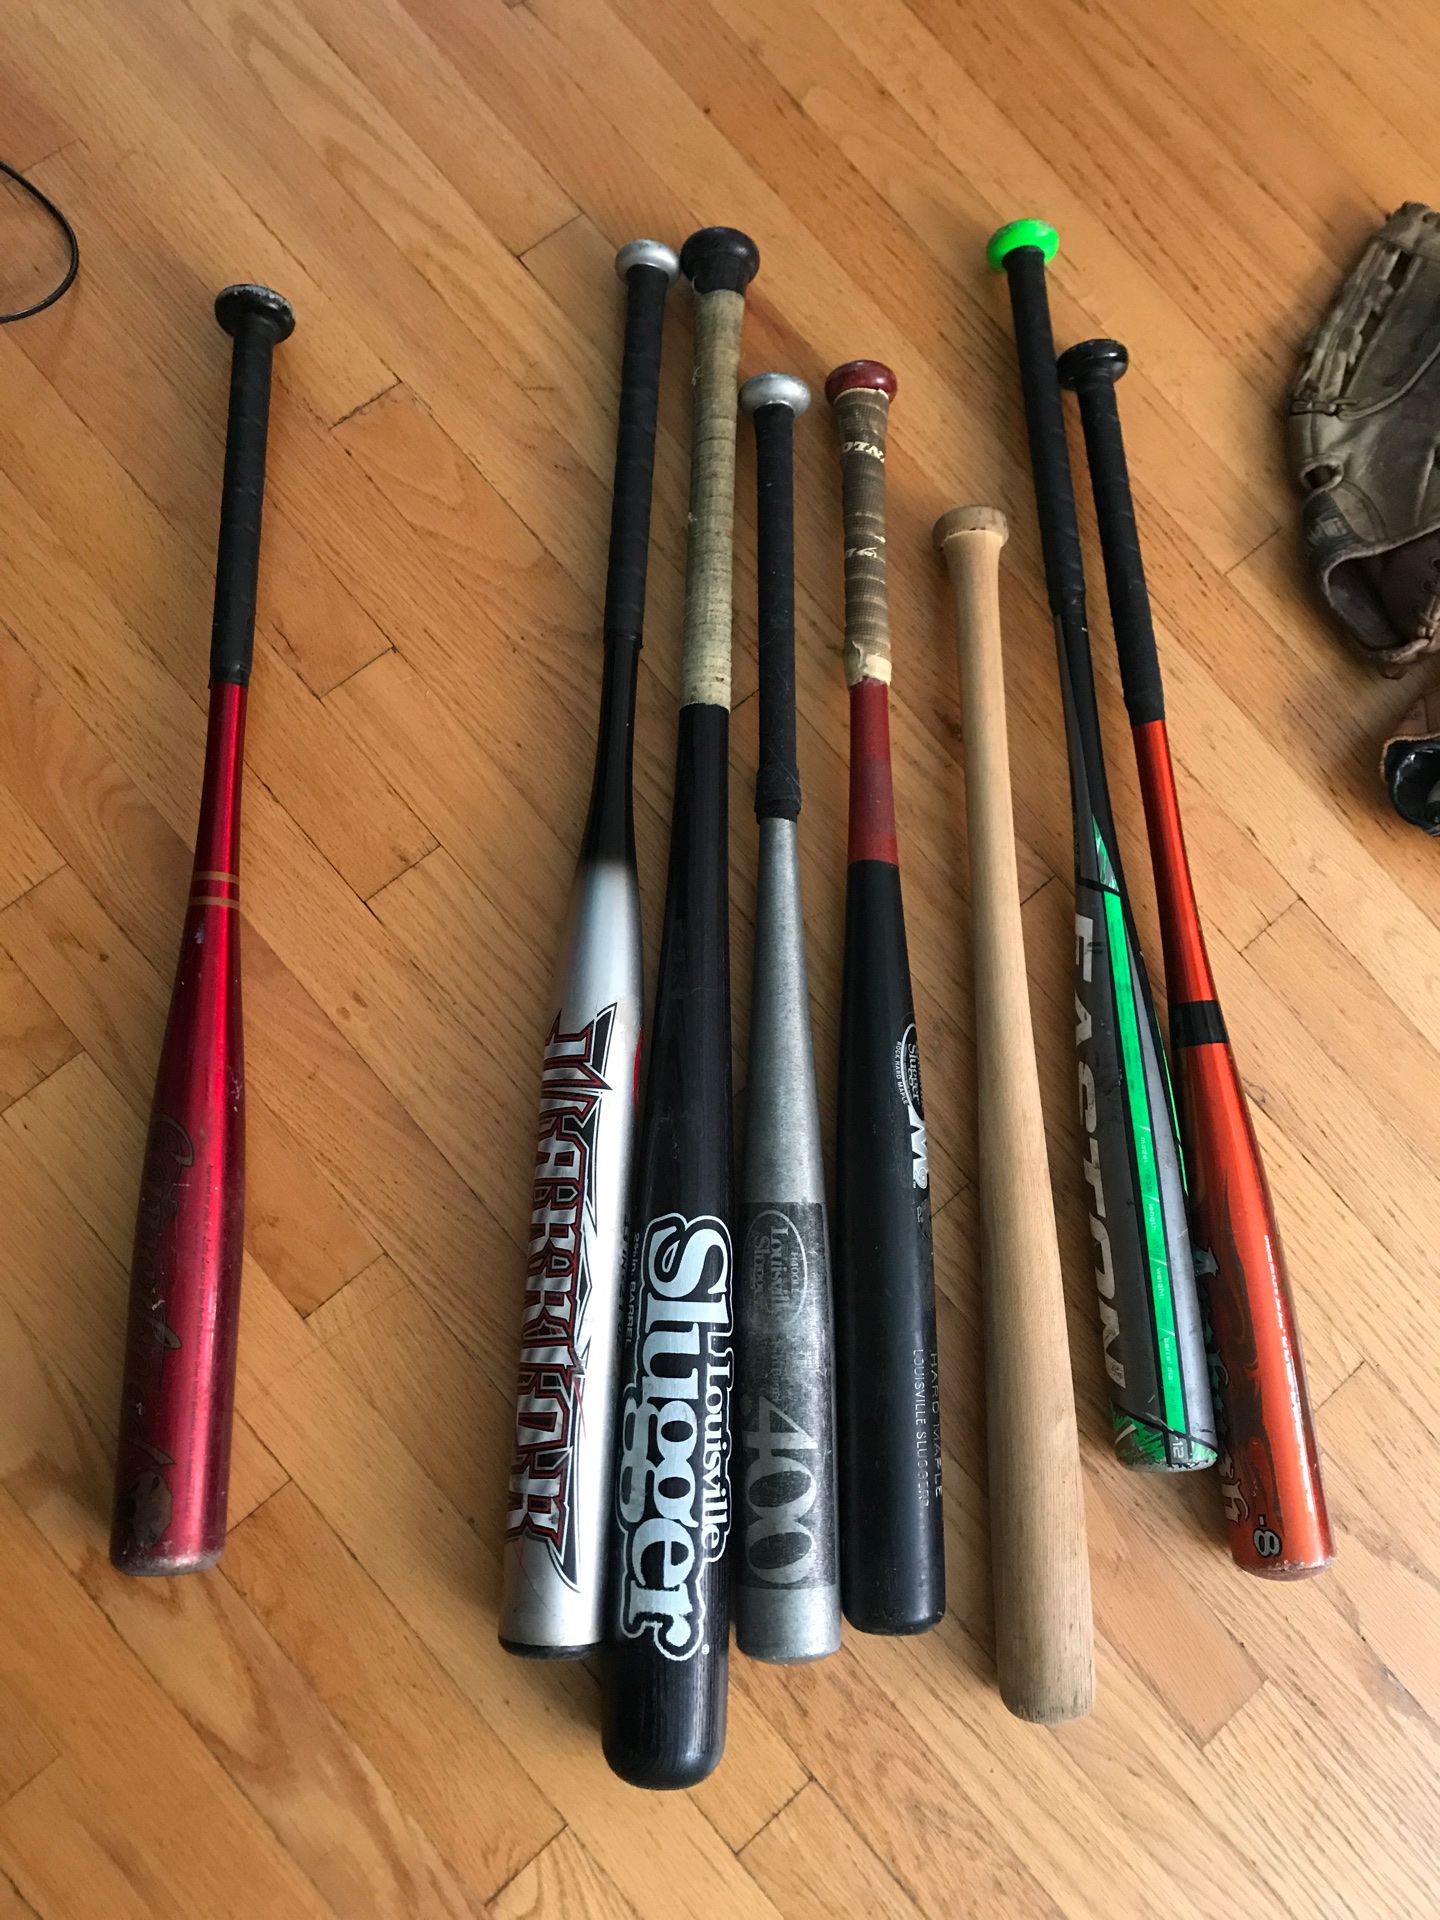 Baseball bats and gloves